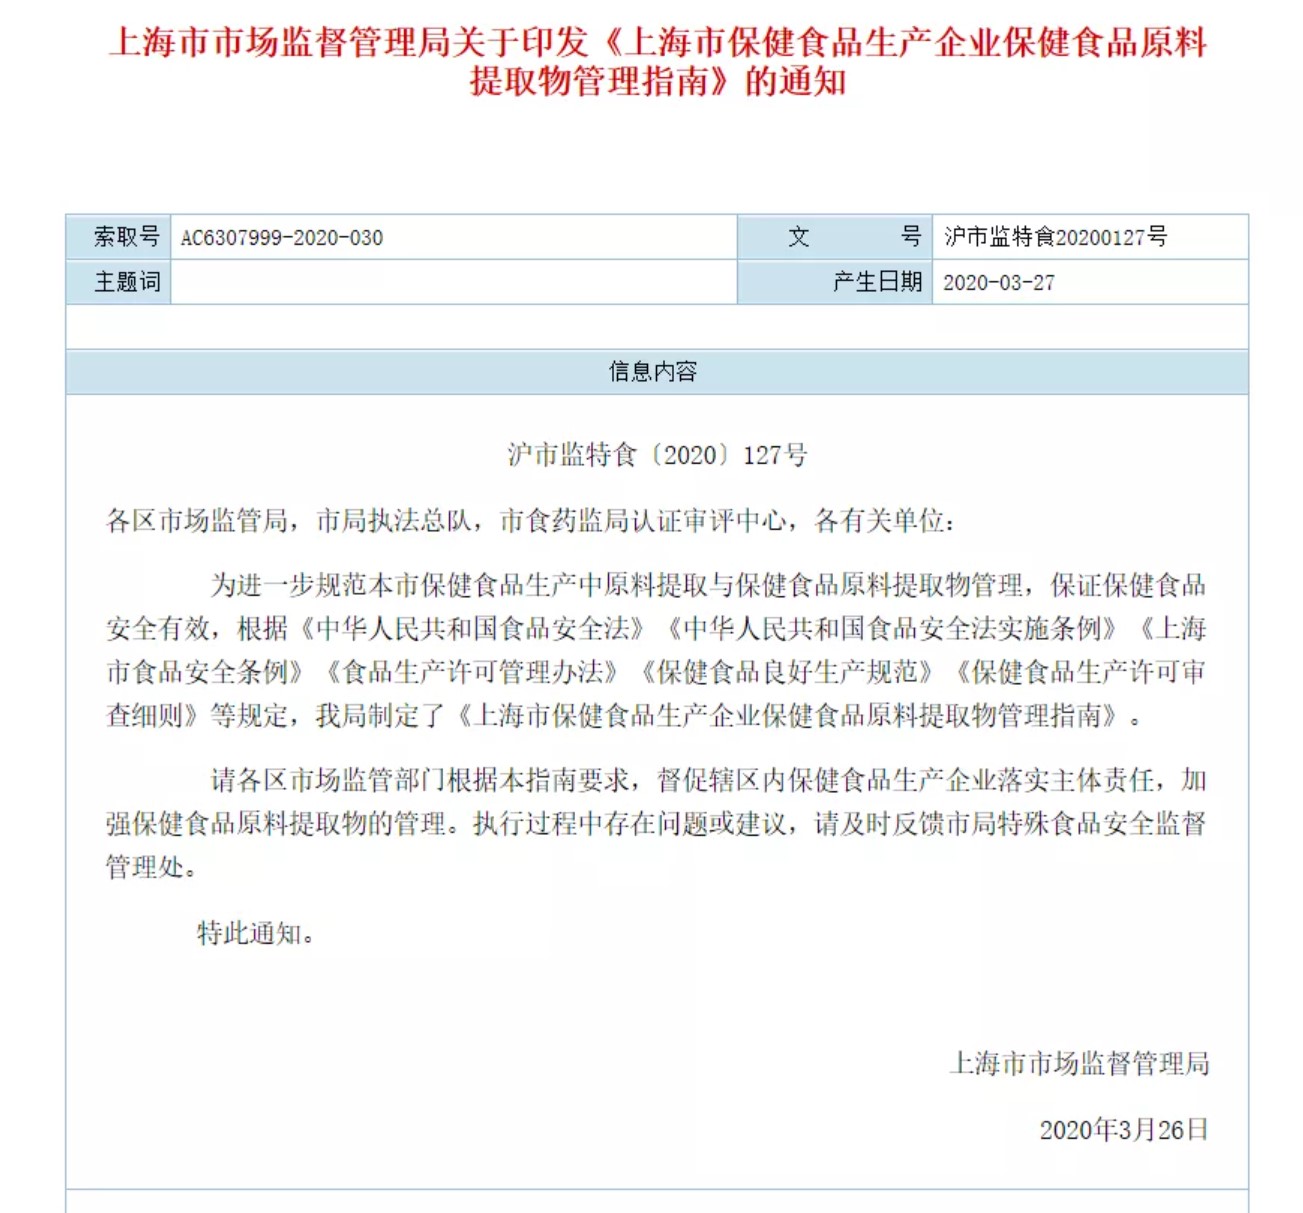 《上海市保健食品生产企业保健食品原料提取物管理指南》